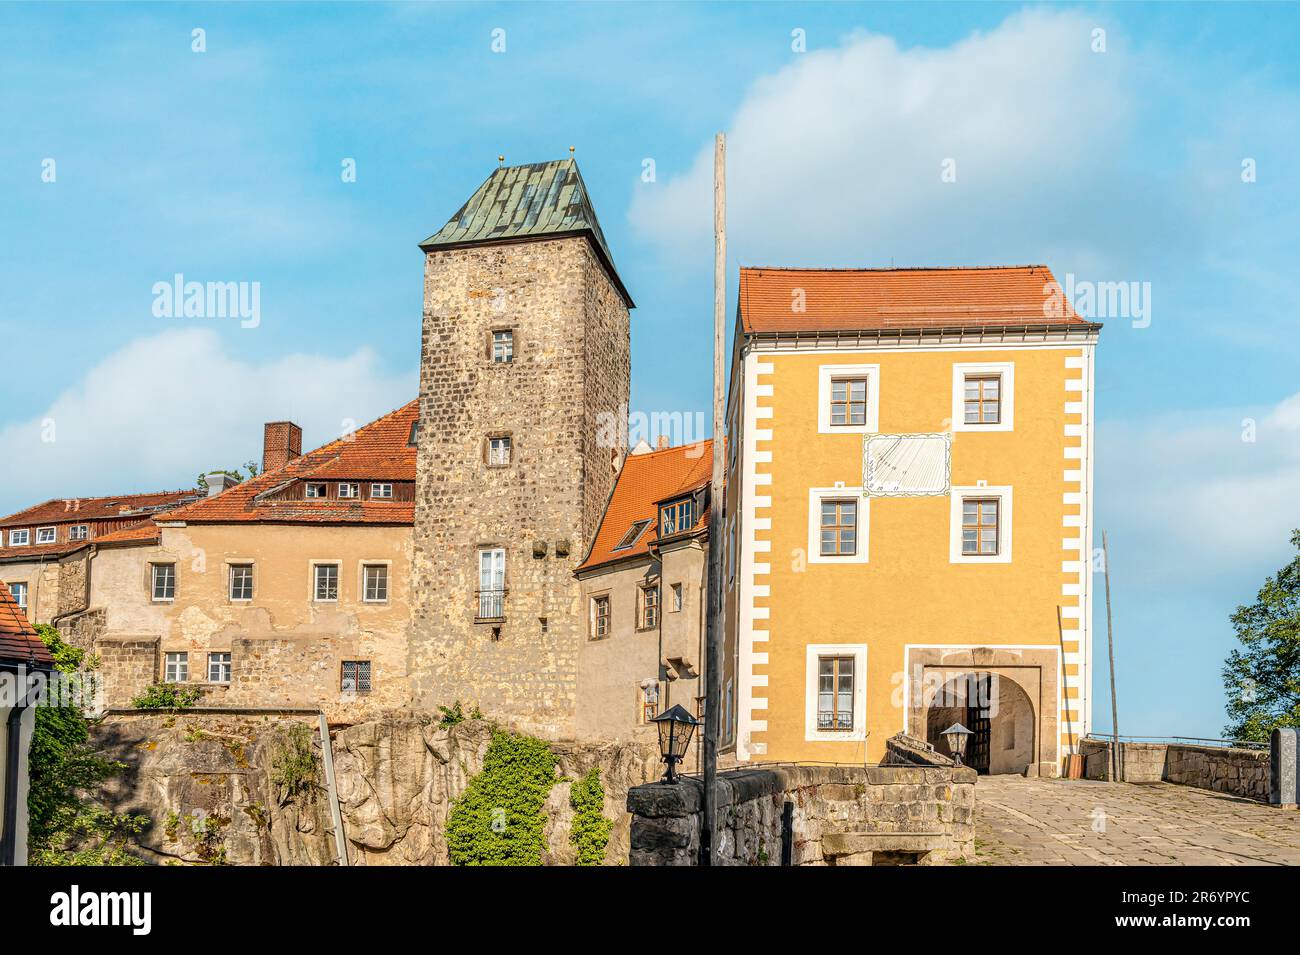 Einfahrt zur Burg Hohnstein im sächsischen Schweizer Raum, Sachsen, Deutschland Stockfoto